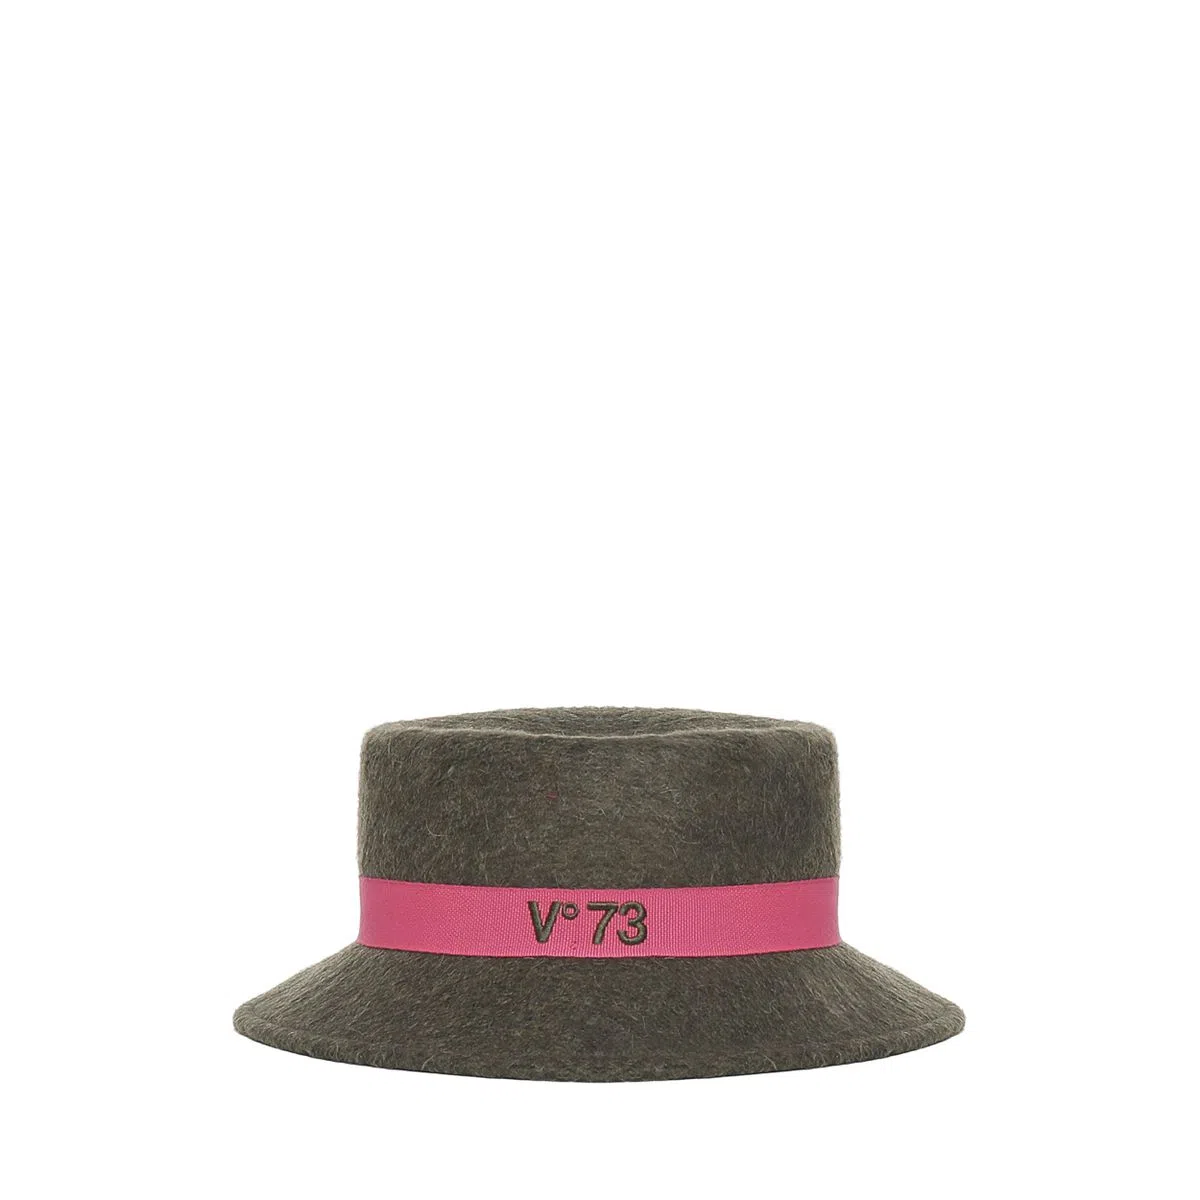 Vº73 sombrero en fieltro color verde